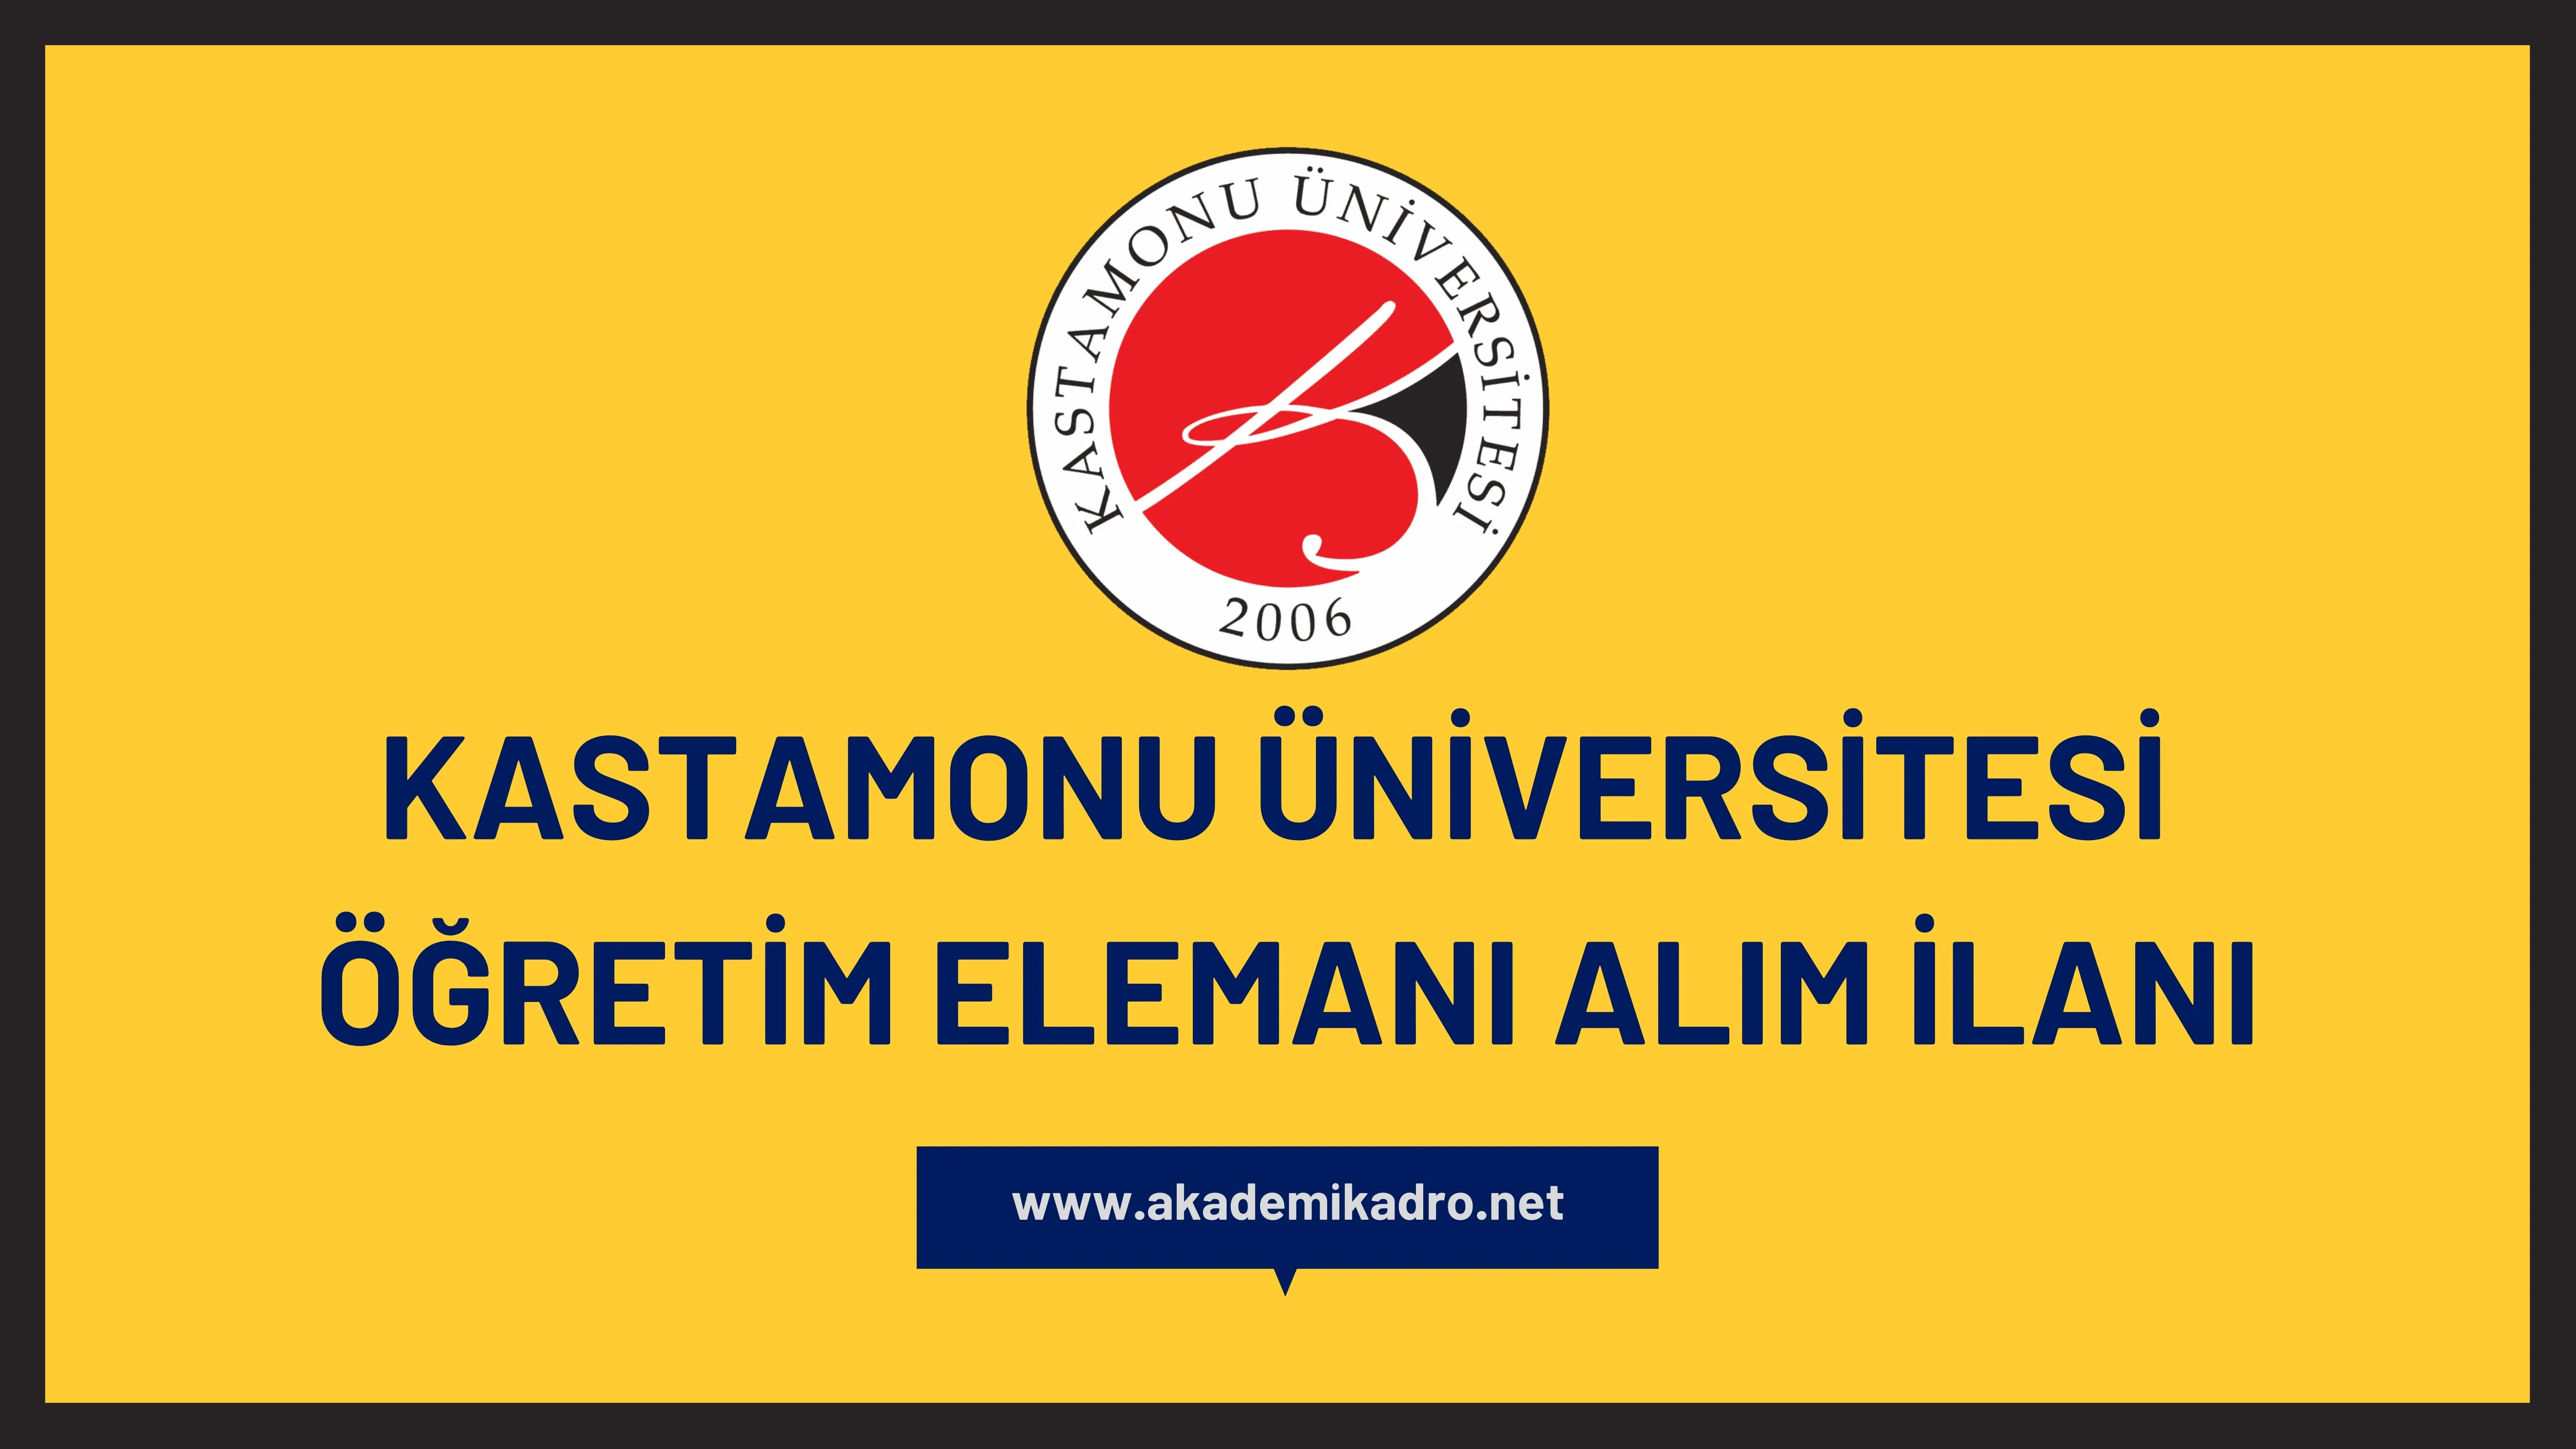 Kastamonu Üniversitesi 74 öğretim üyesi, 6 Öğretim görevlisi ve Araştırma görevlisi alacaktır. Son başvuru tarihi 14 Aralık 2022